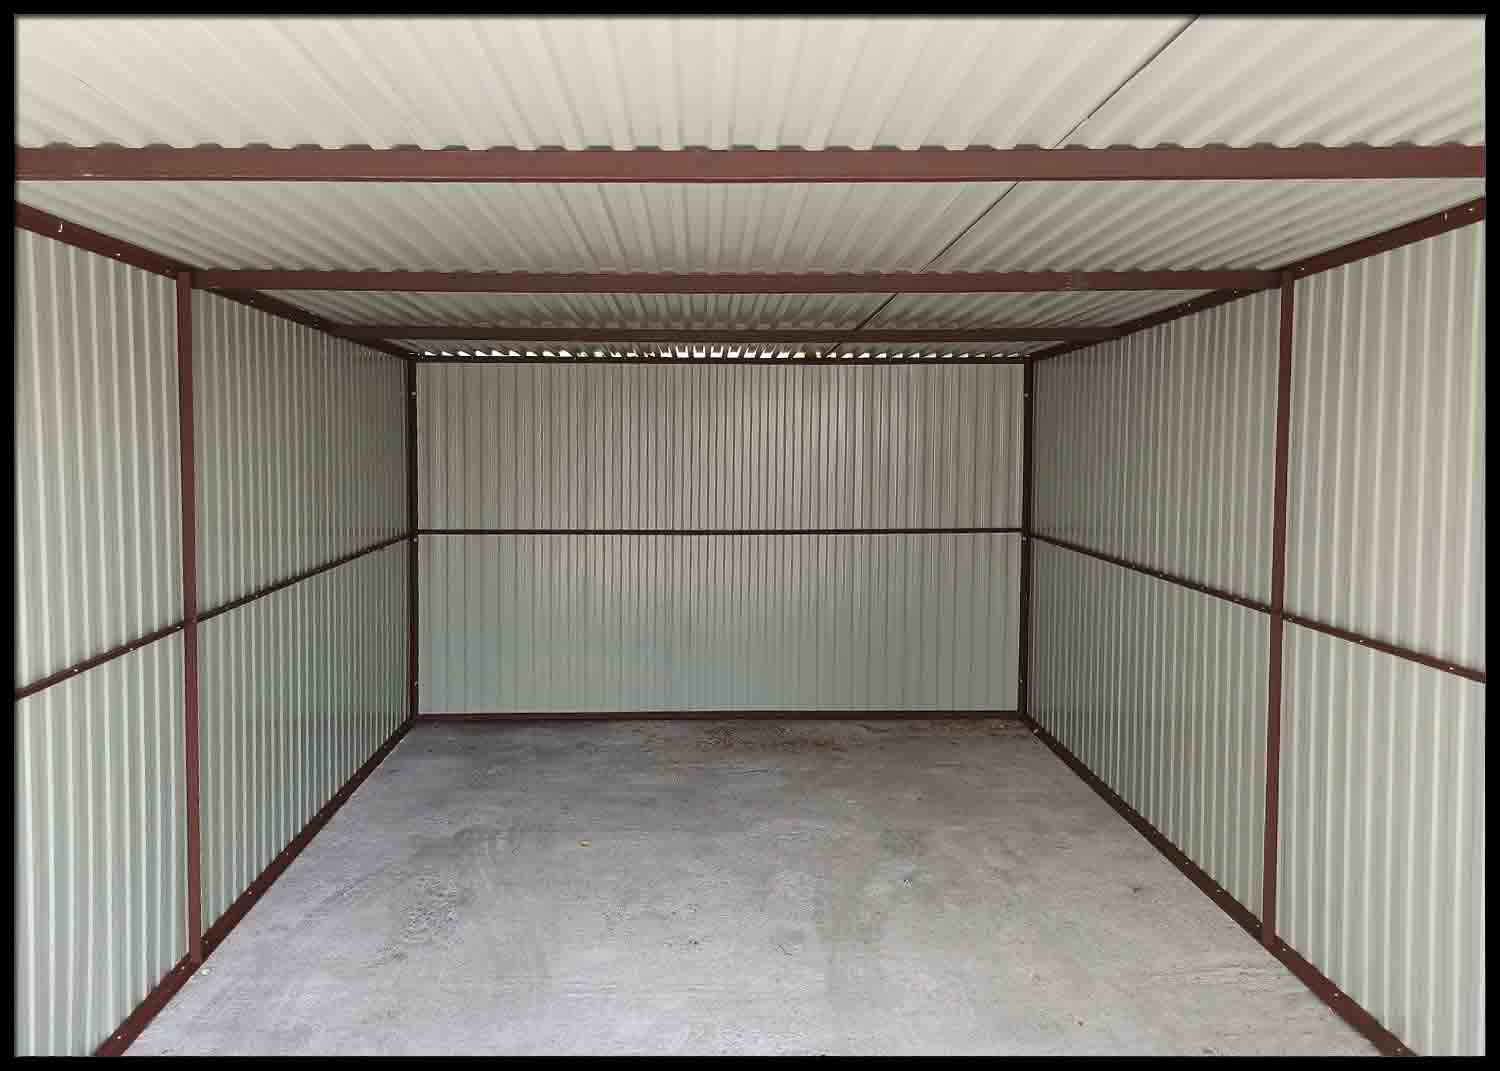 Plechová garáž 3×5 m, BTX 8017, brána dvojkrídlová – široký panel